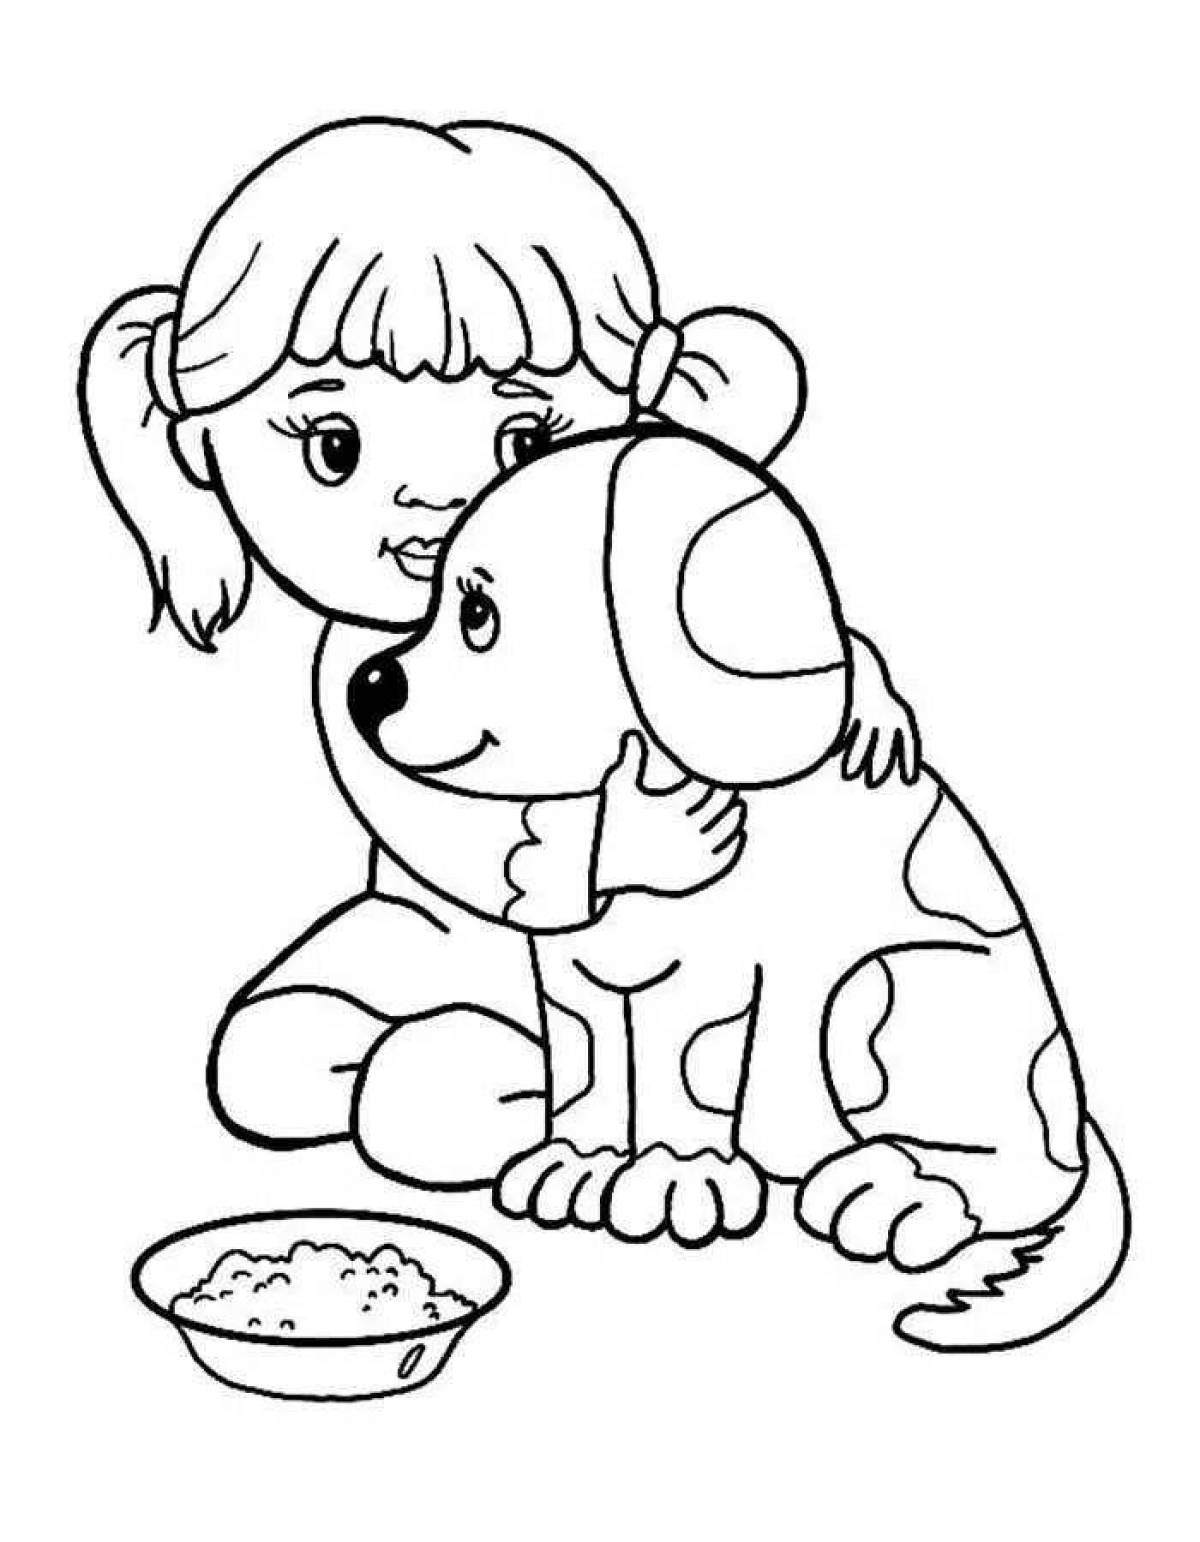 Раскраски Собаки - Картинки-раскраски для детей и взрослых